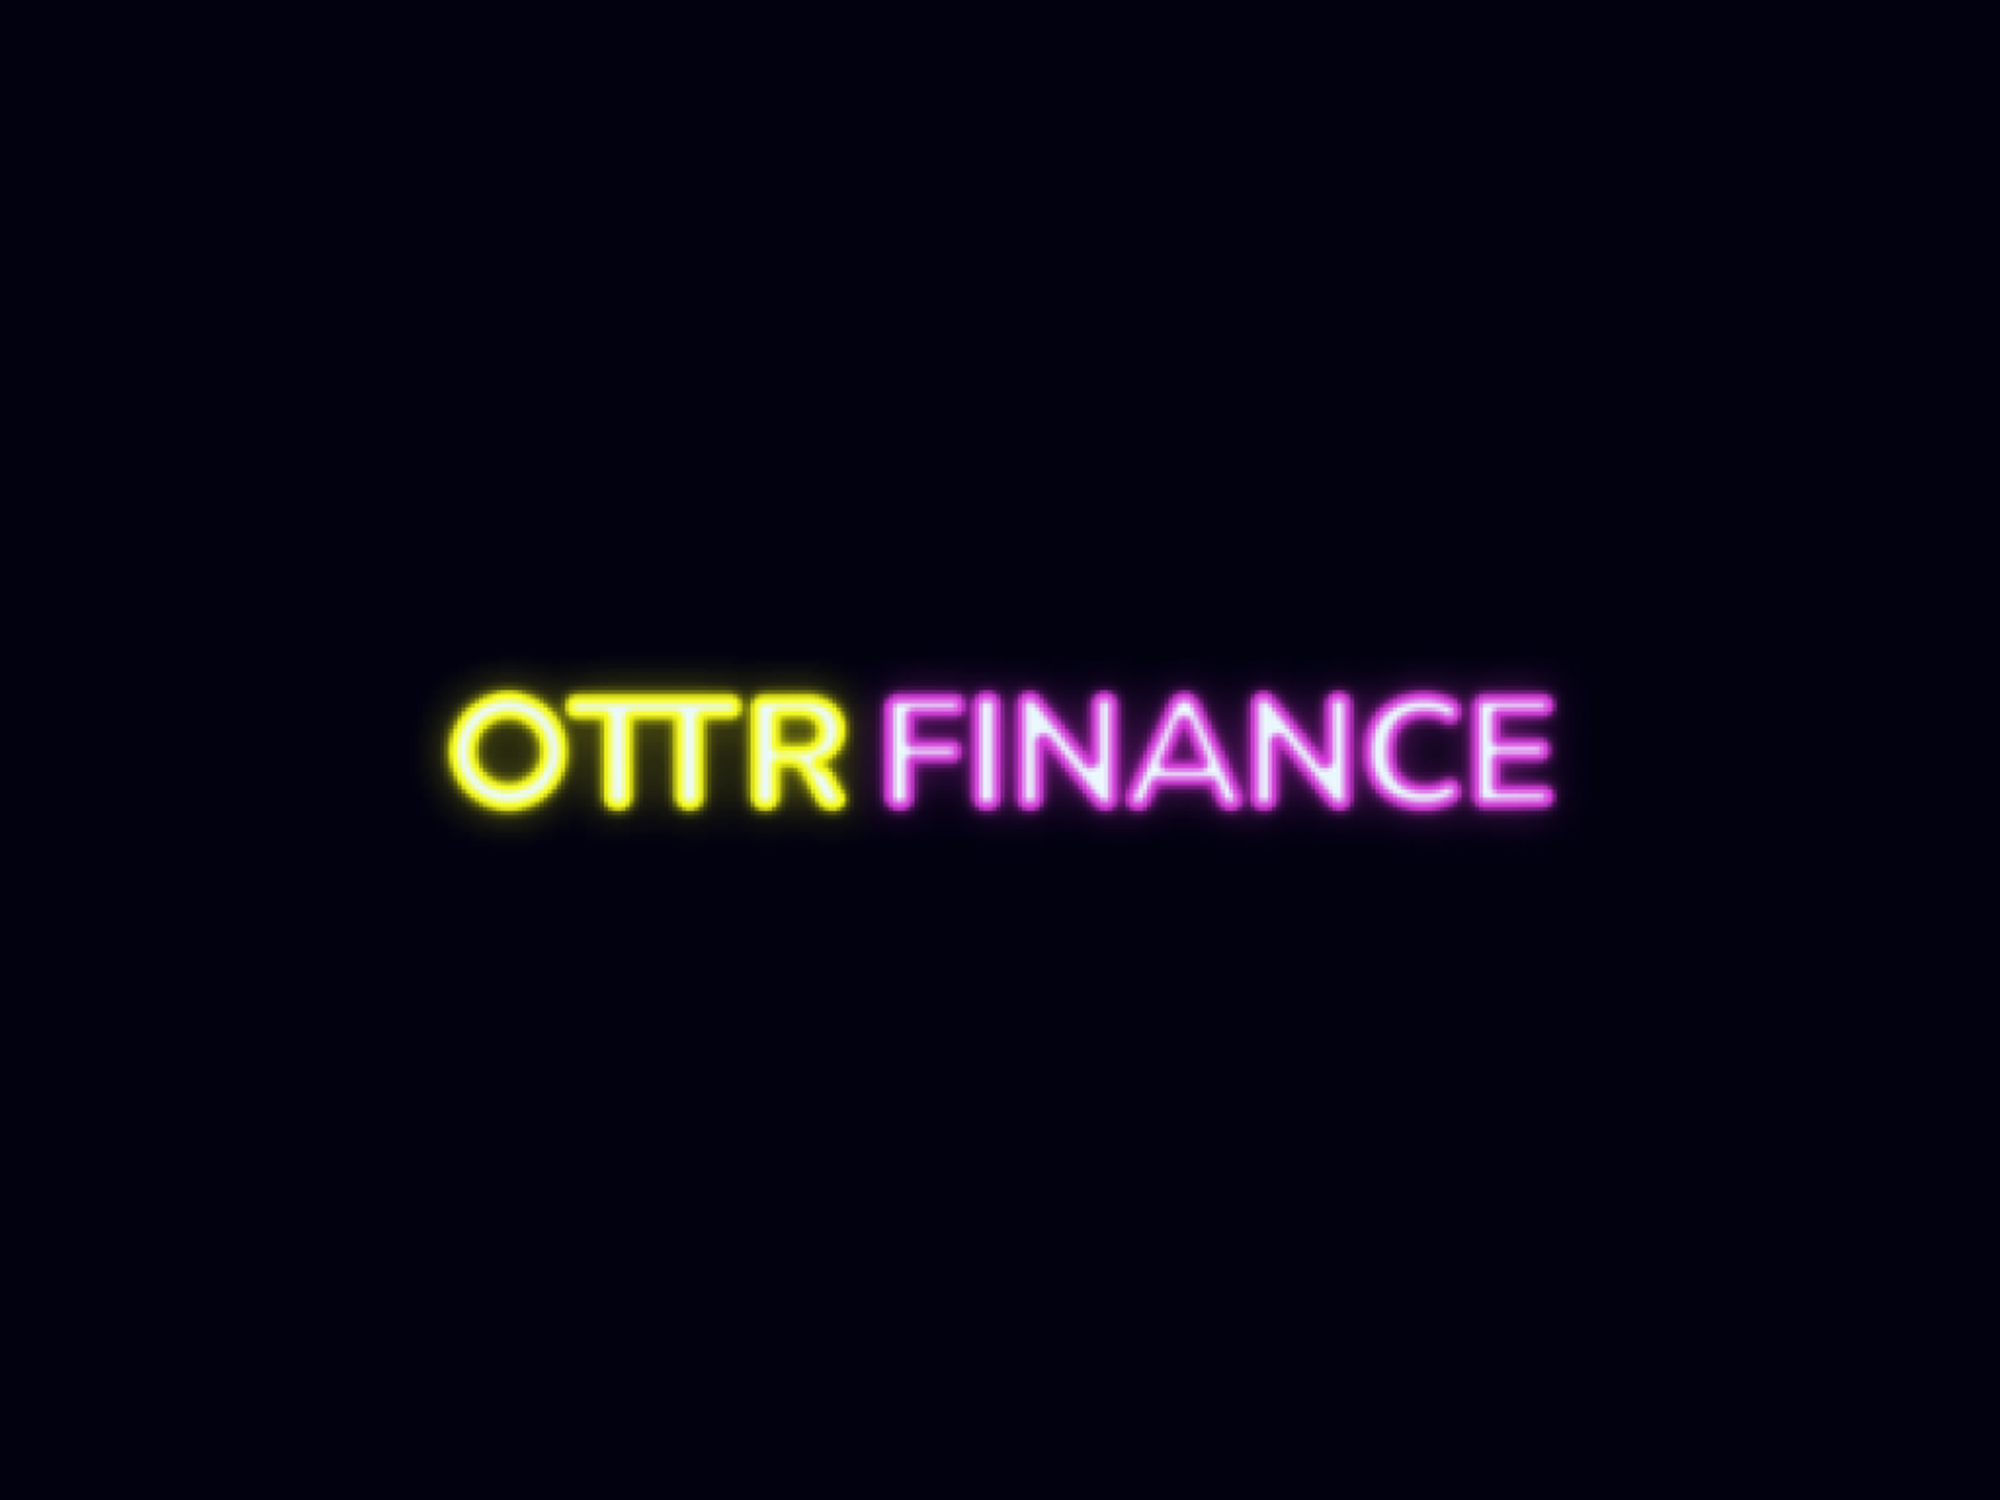 Ottr Finance